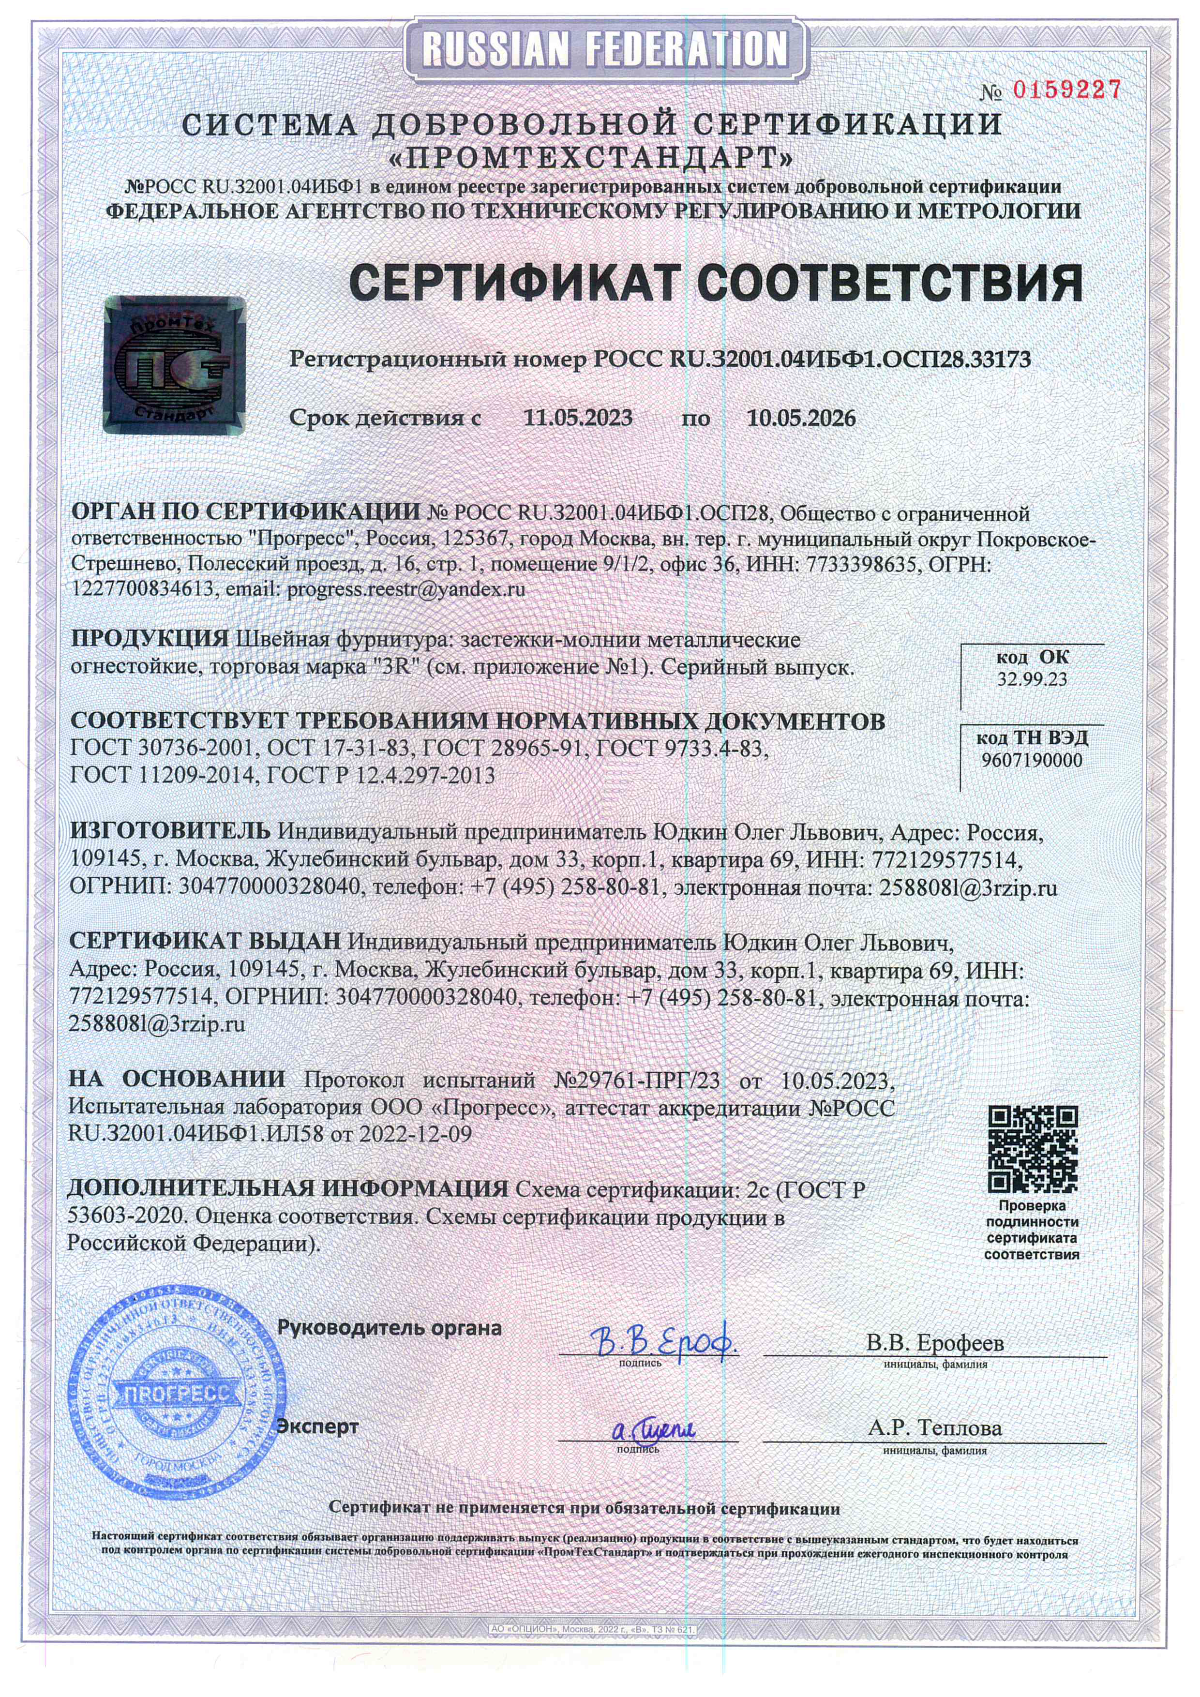 Сертификат соответствия Застёжки молнии металлические огнестойкие